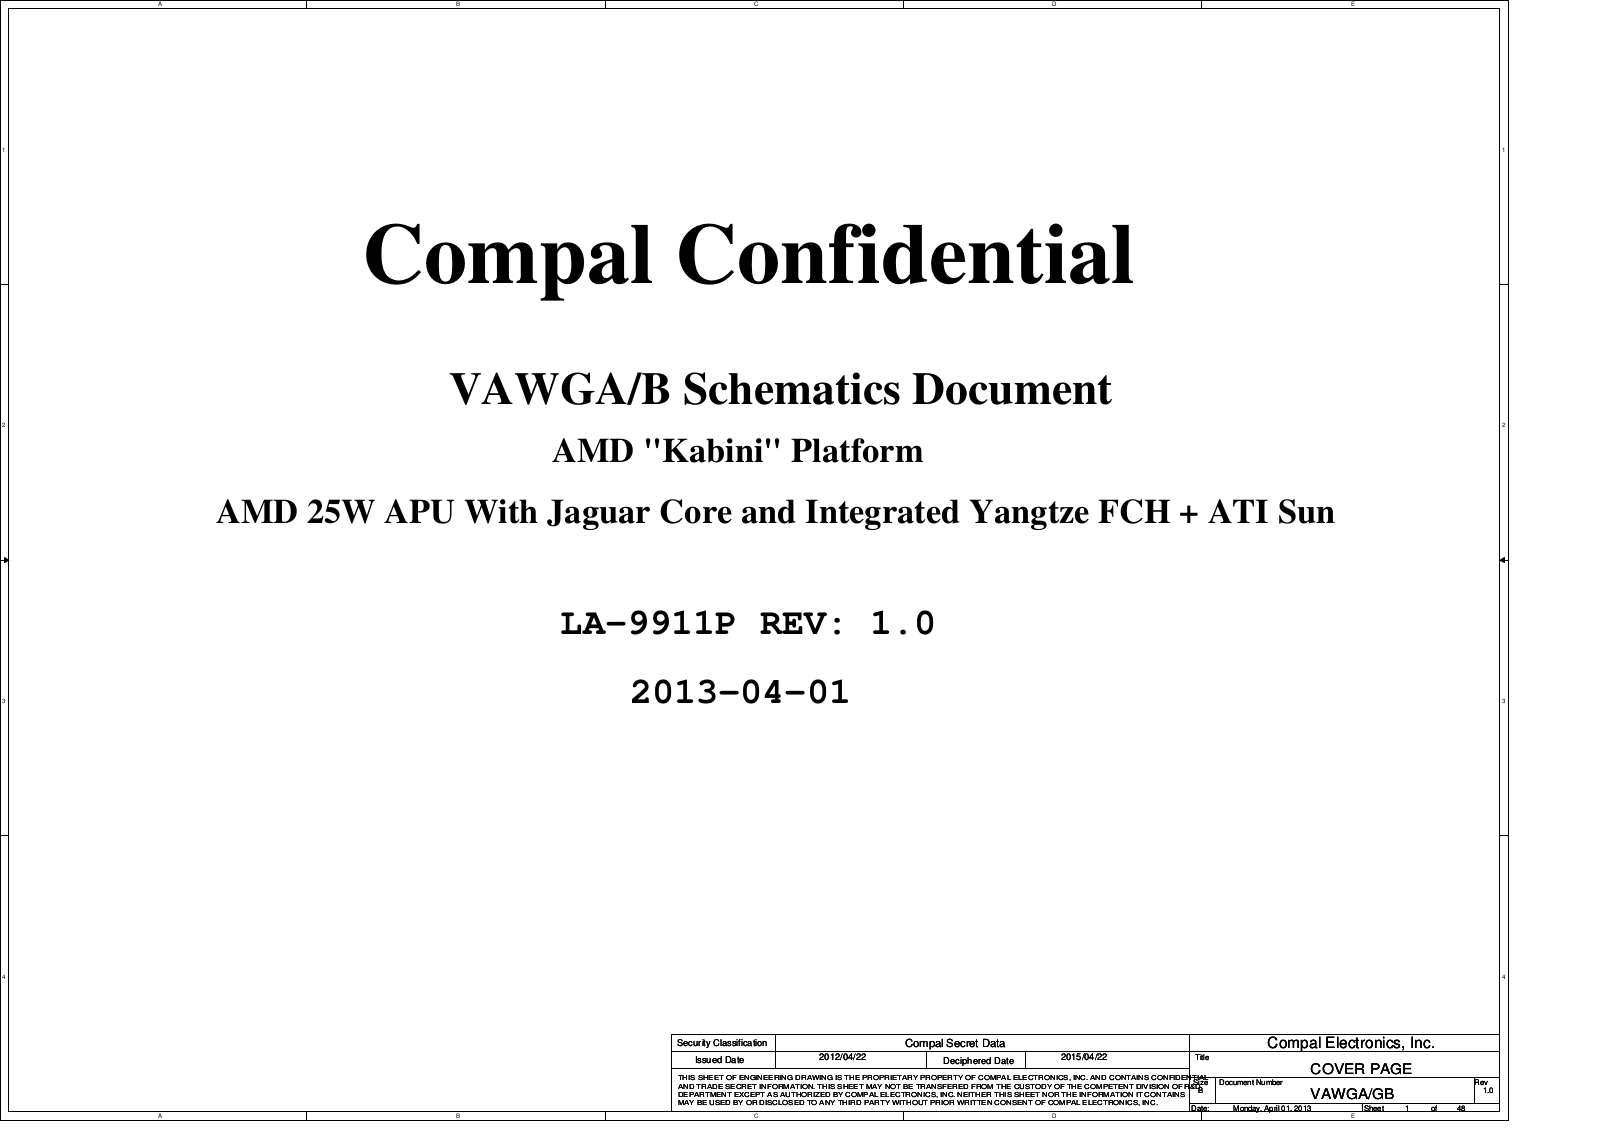 Compal LA-9911P VAWGA, G505, LA-9911P VAWGB Schematic